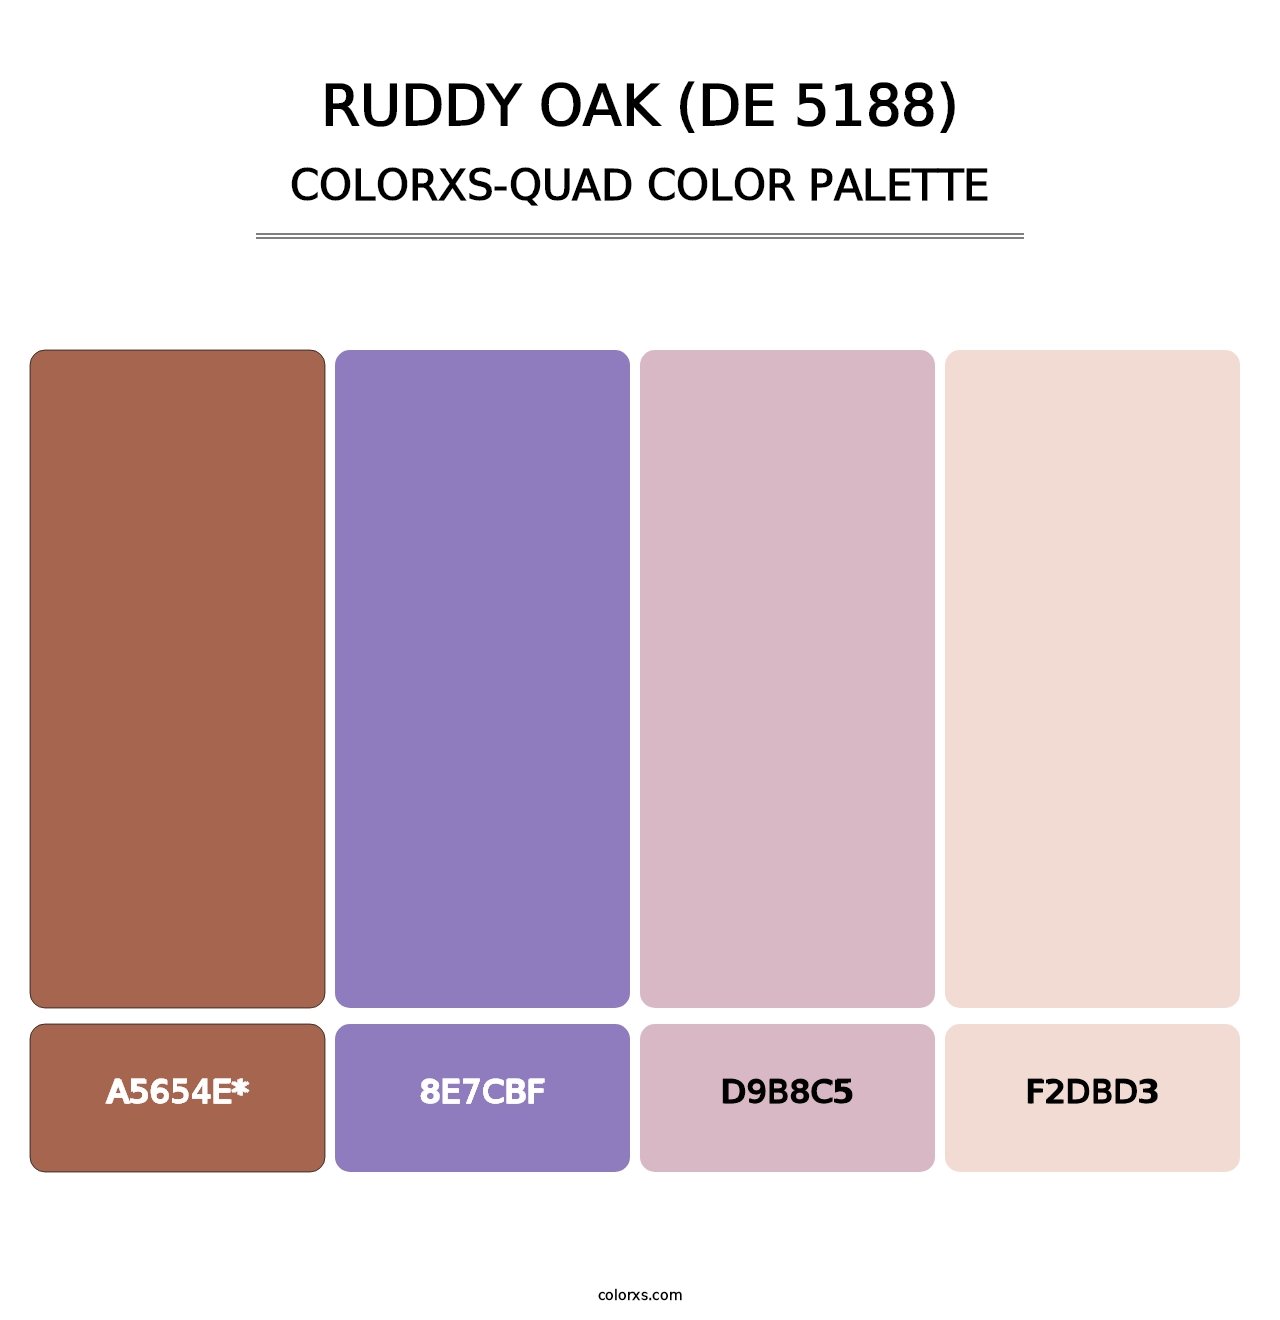 Ruddy Oak (DE 5188) - Colorxs Quad Palette